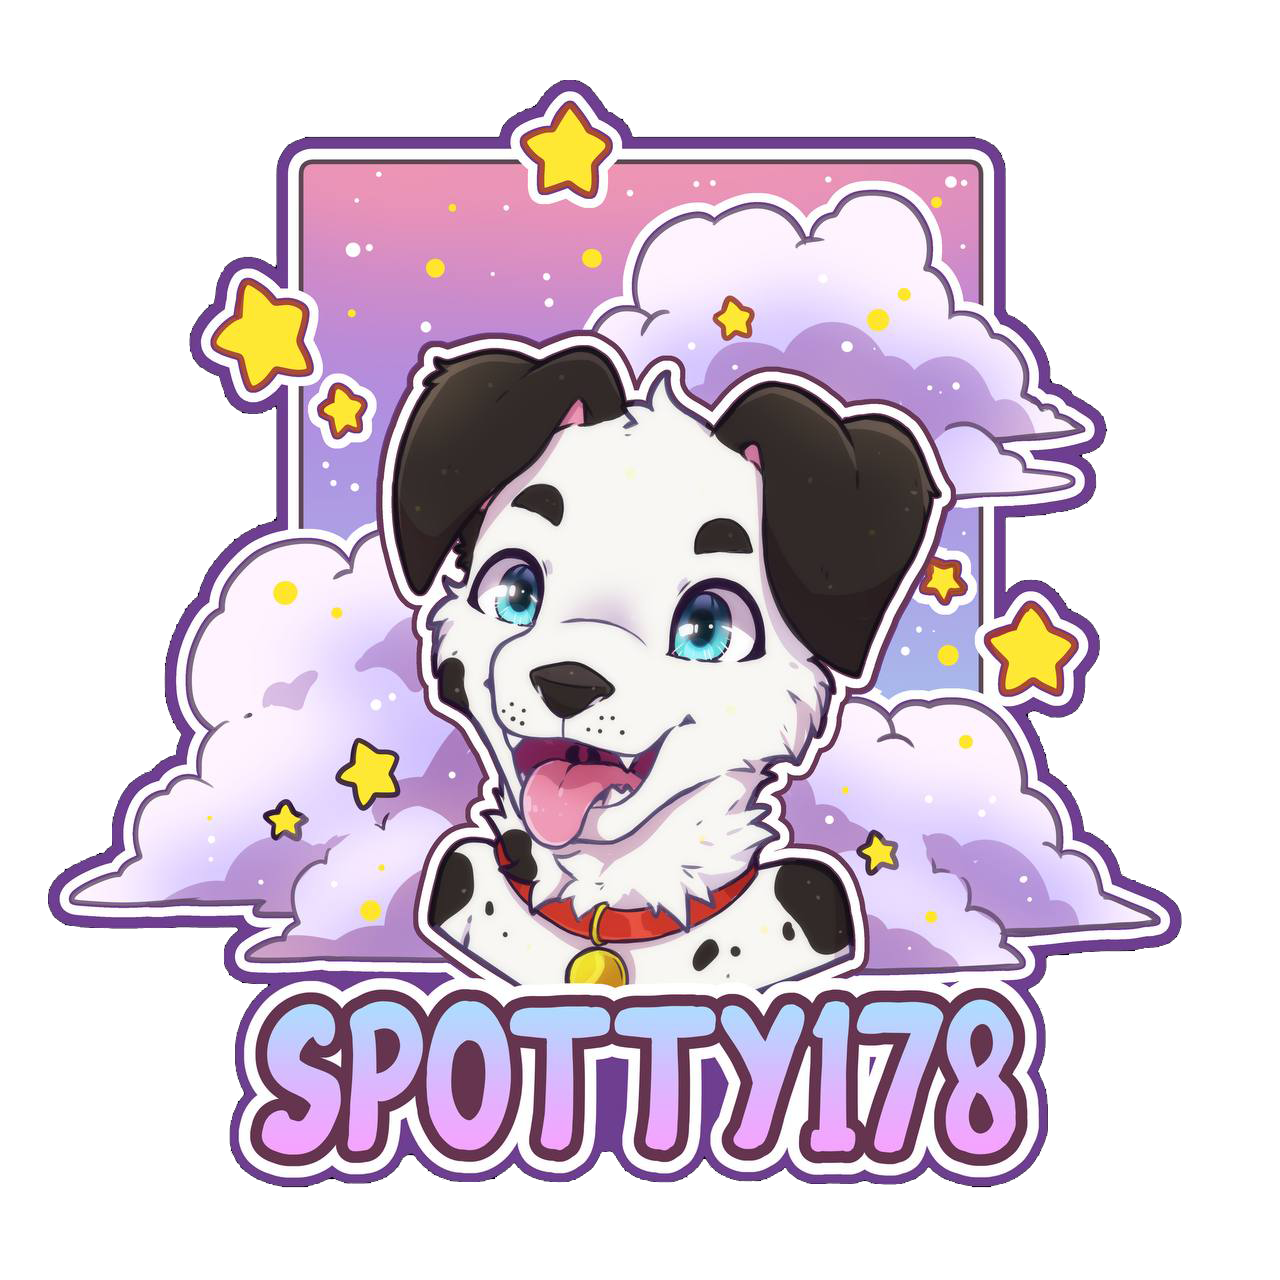 Spotty178